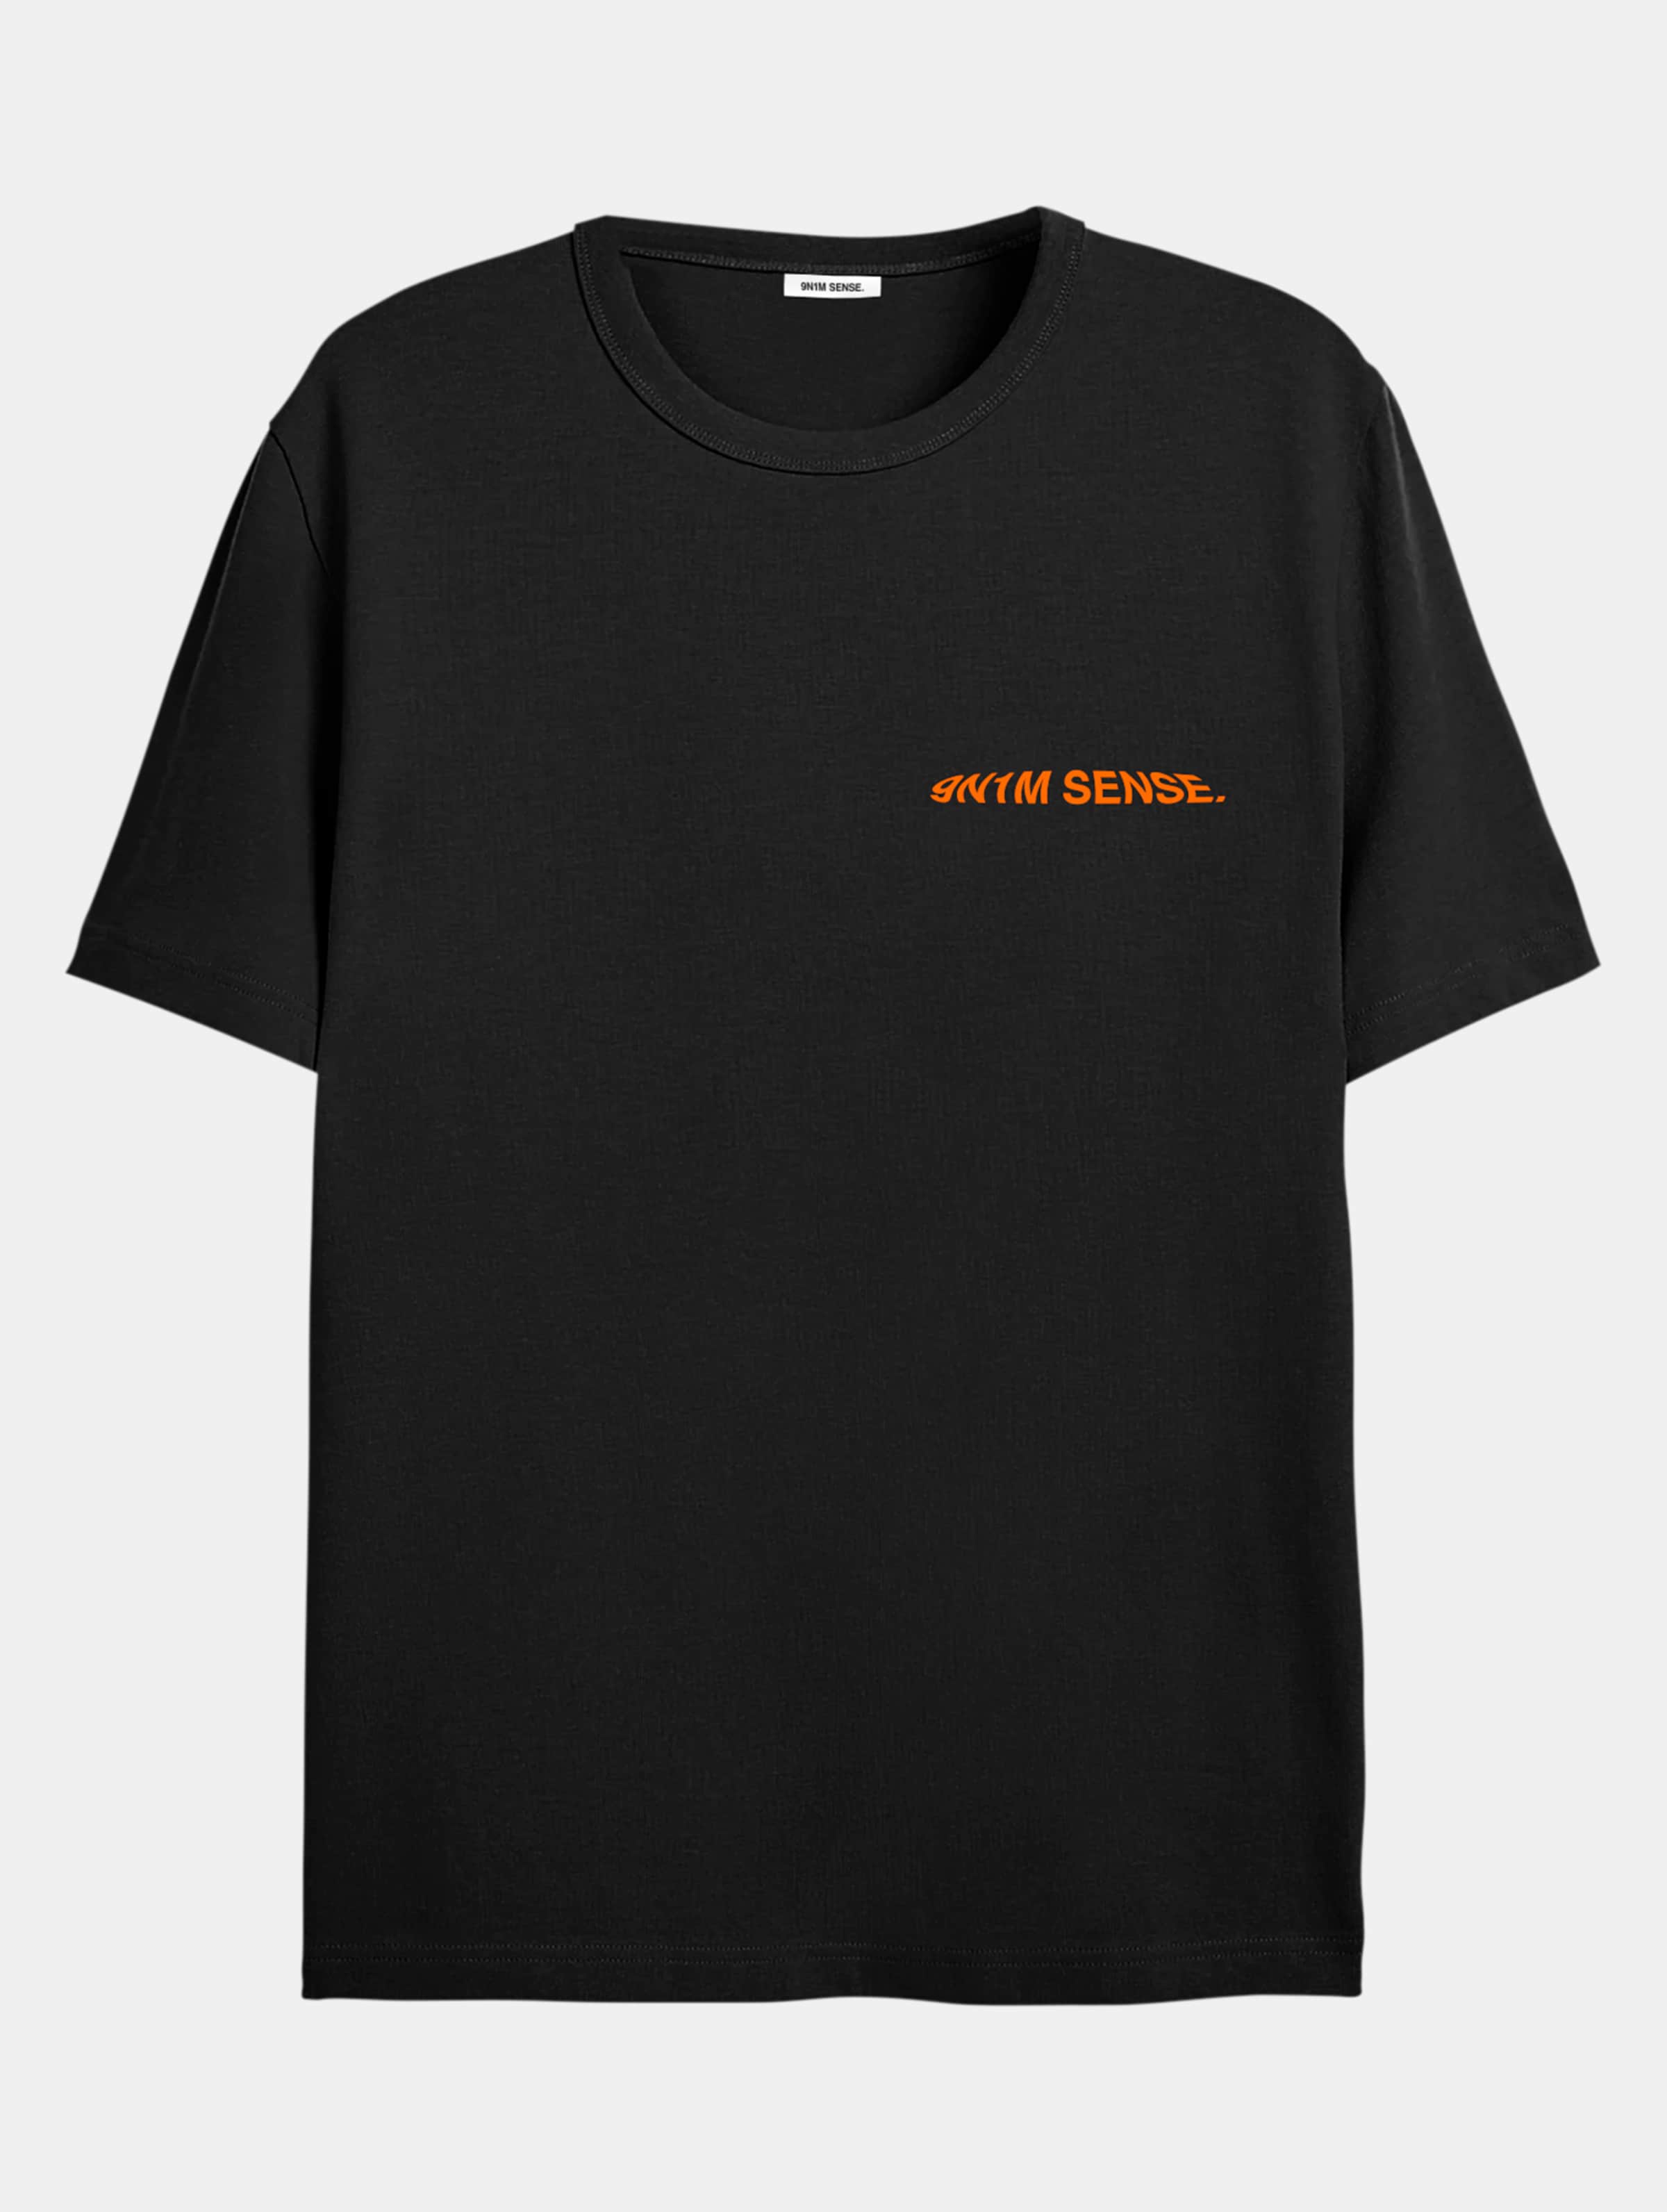 9N1M SENSE ANATOMY 2 T-Shirt Männer,Unisex op kleur zwart, Maat M